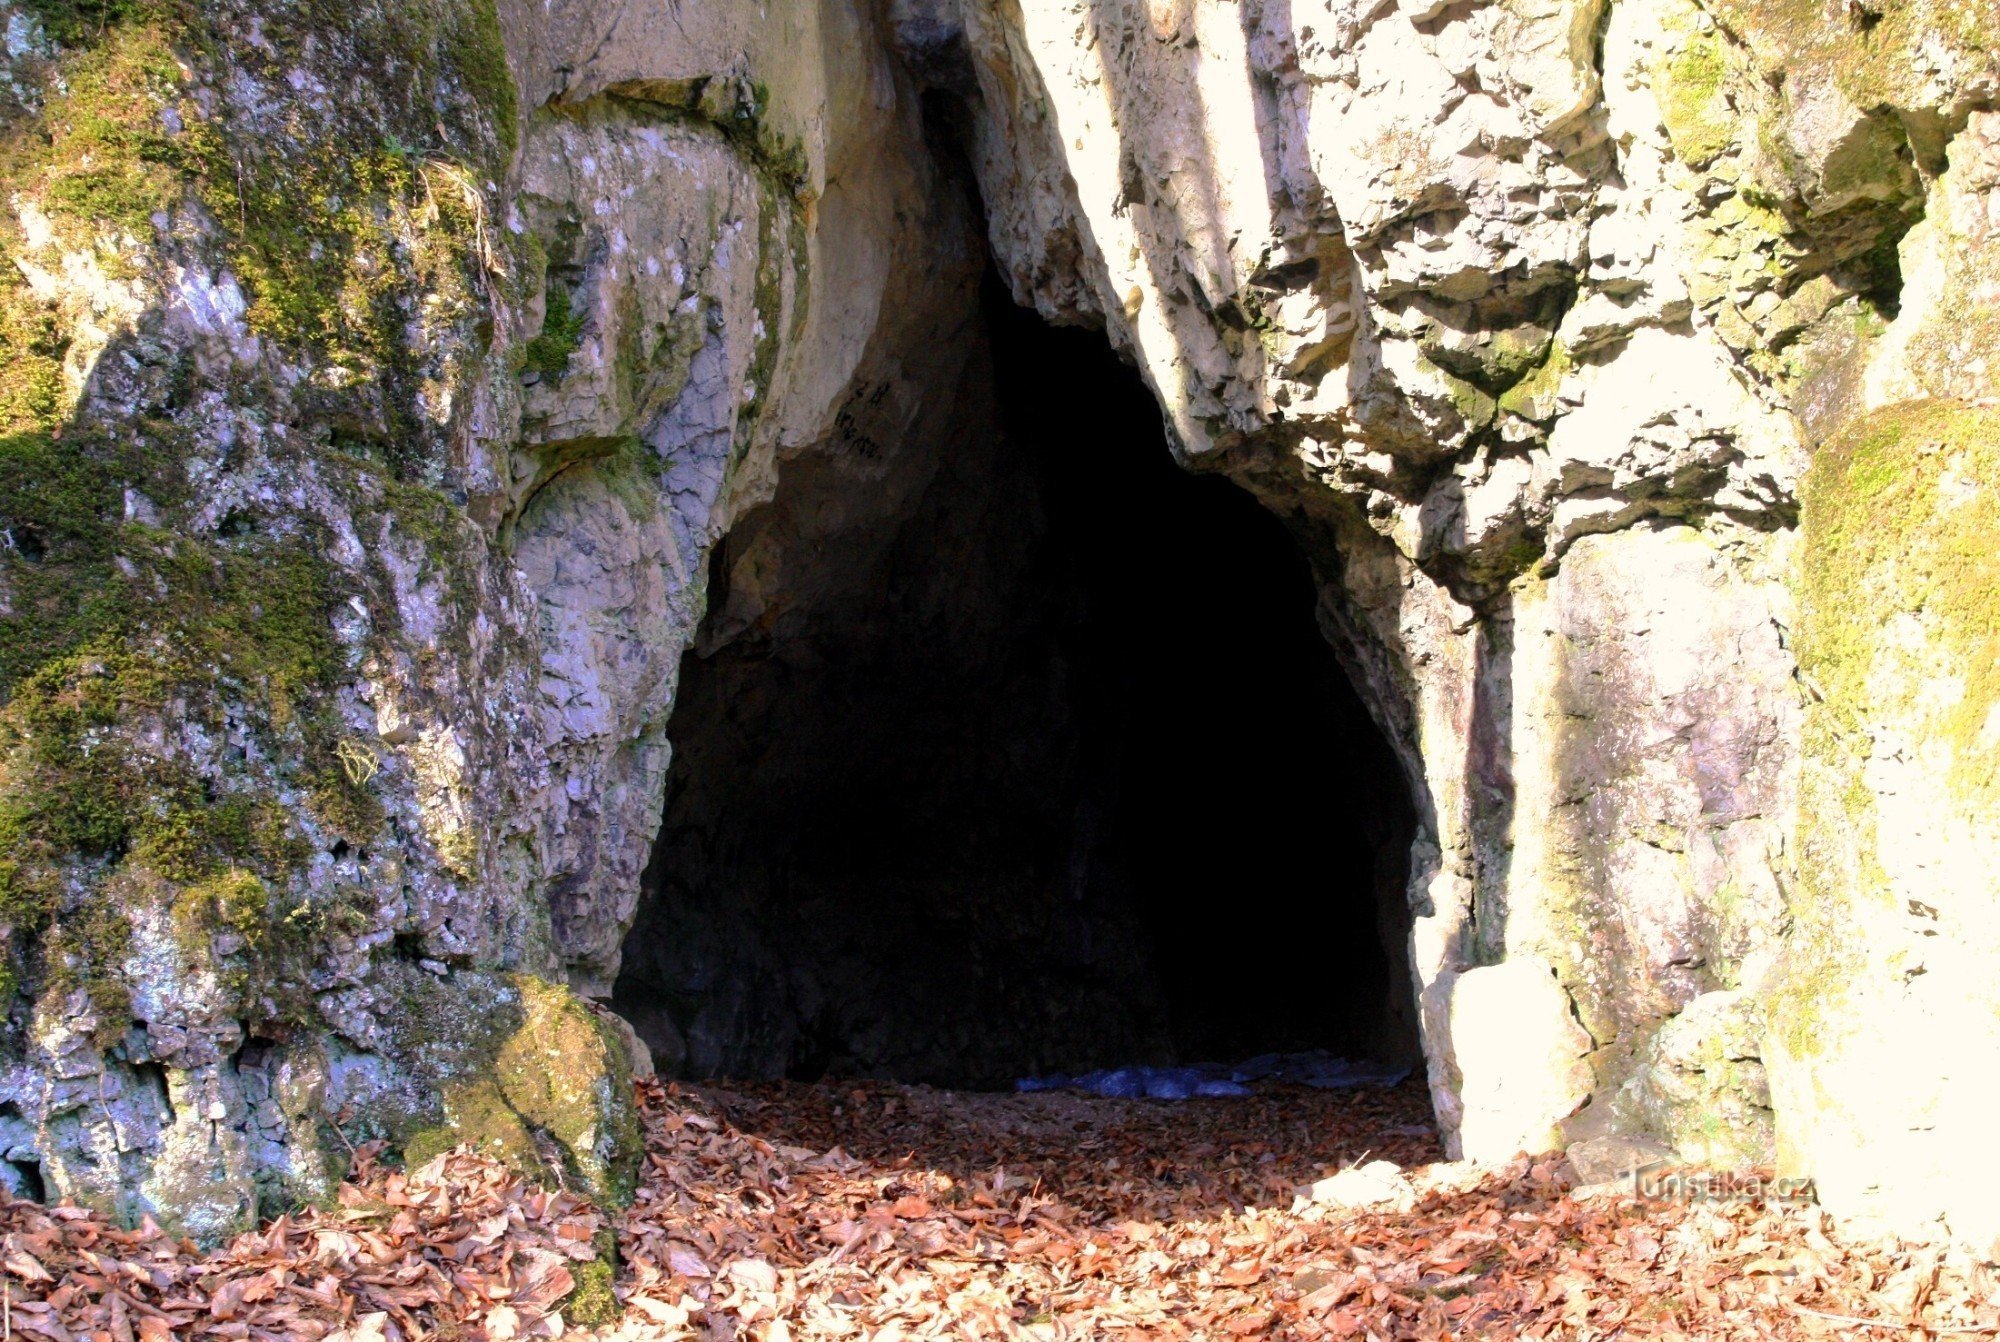 Indgang til Vokounky-grotten